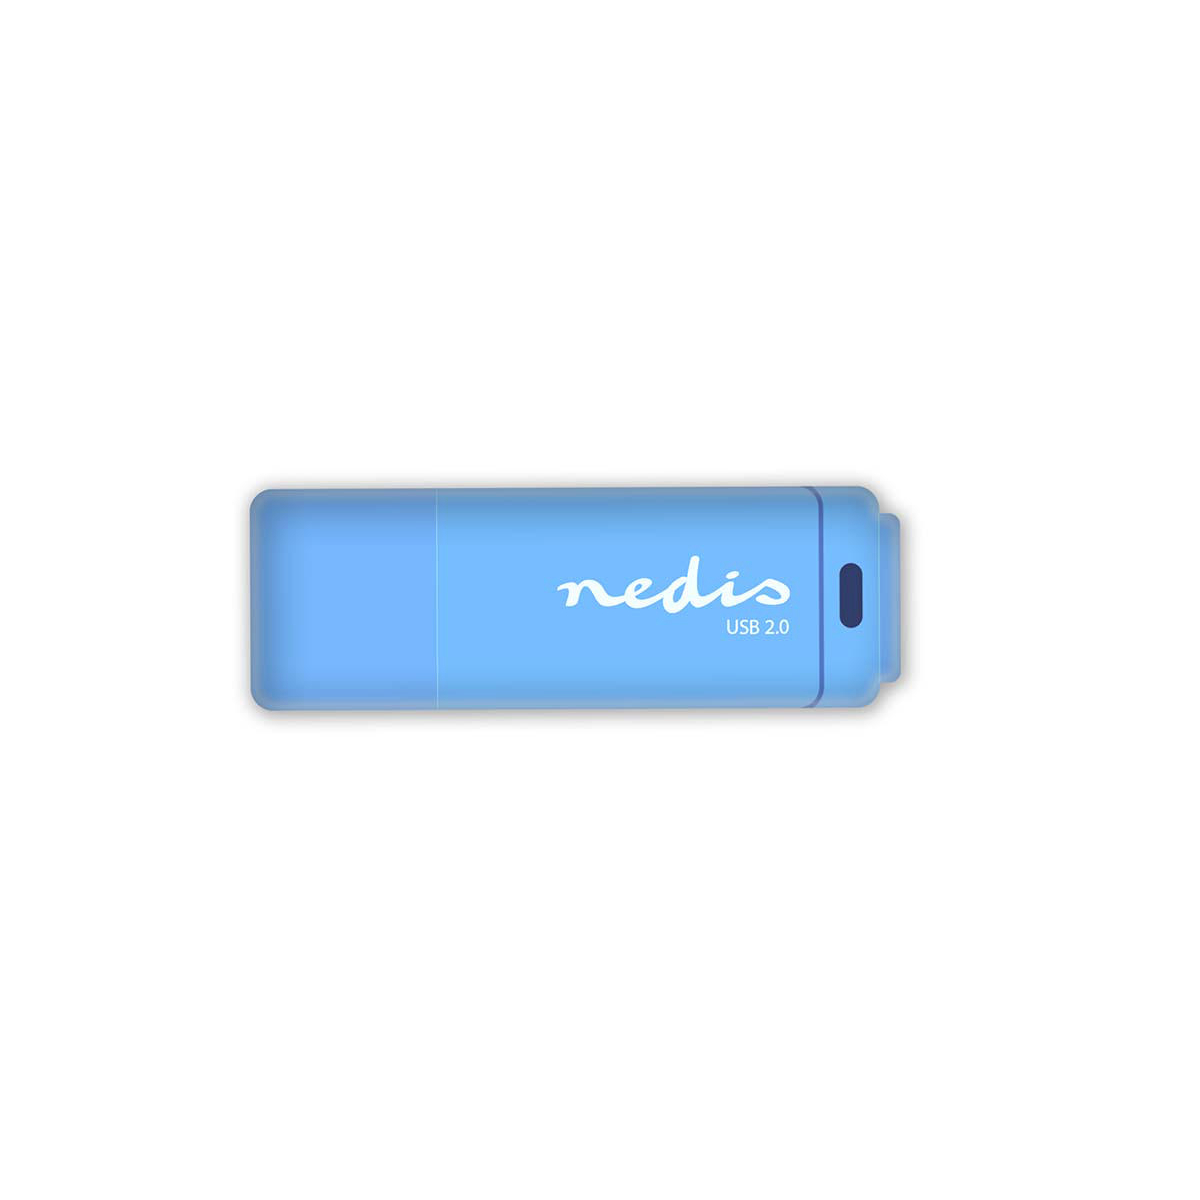 Nedis FDRIU232BU flash disk USB 2.0 32 GB